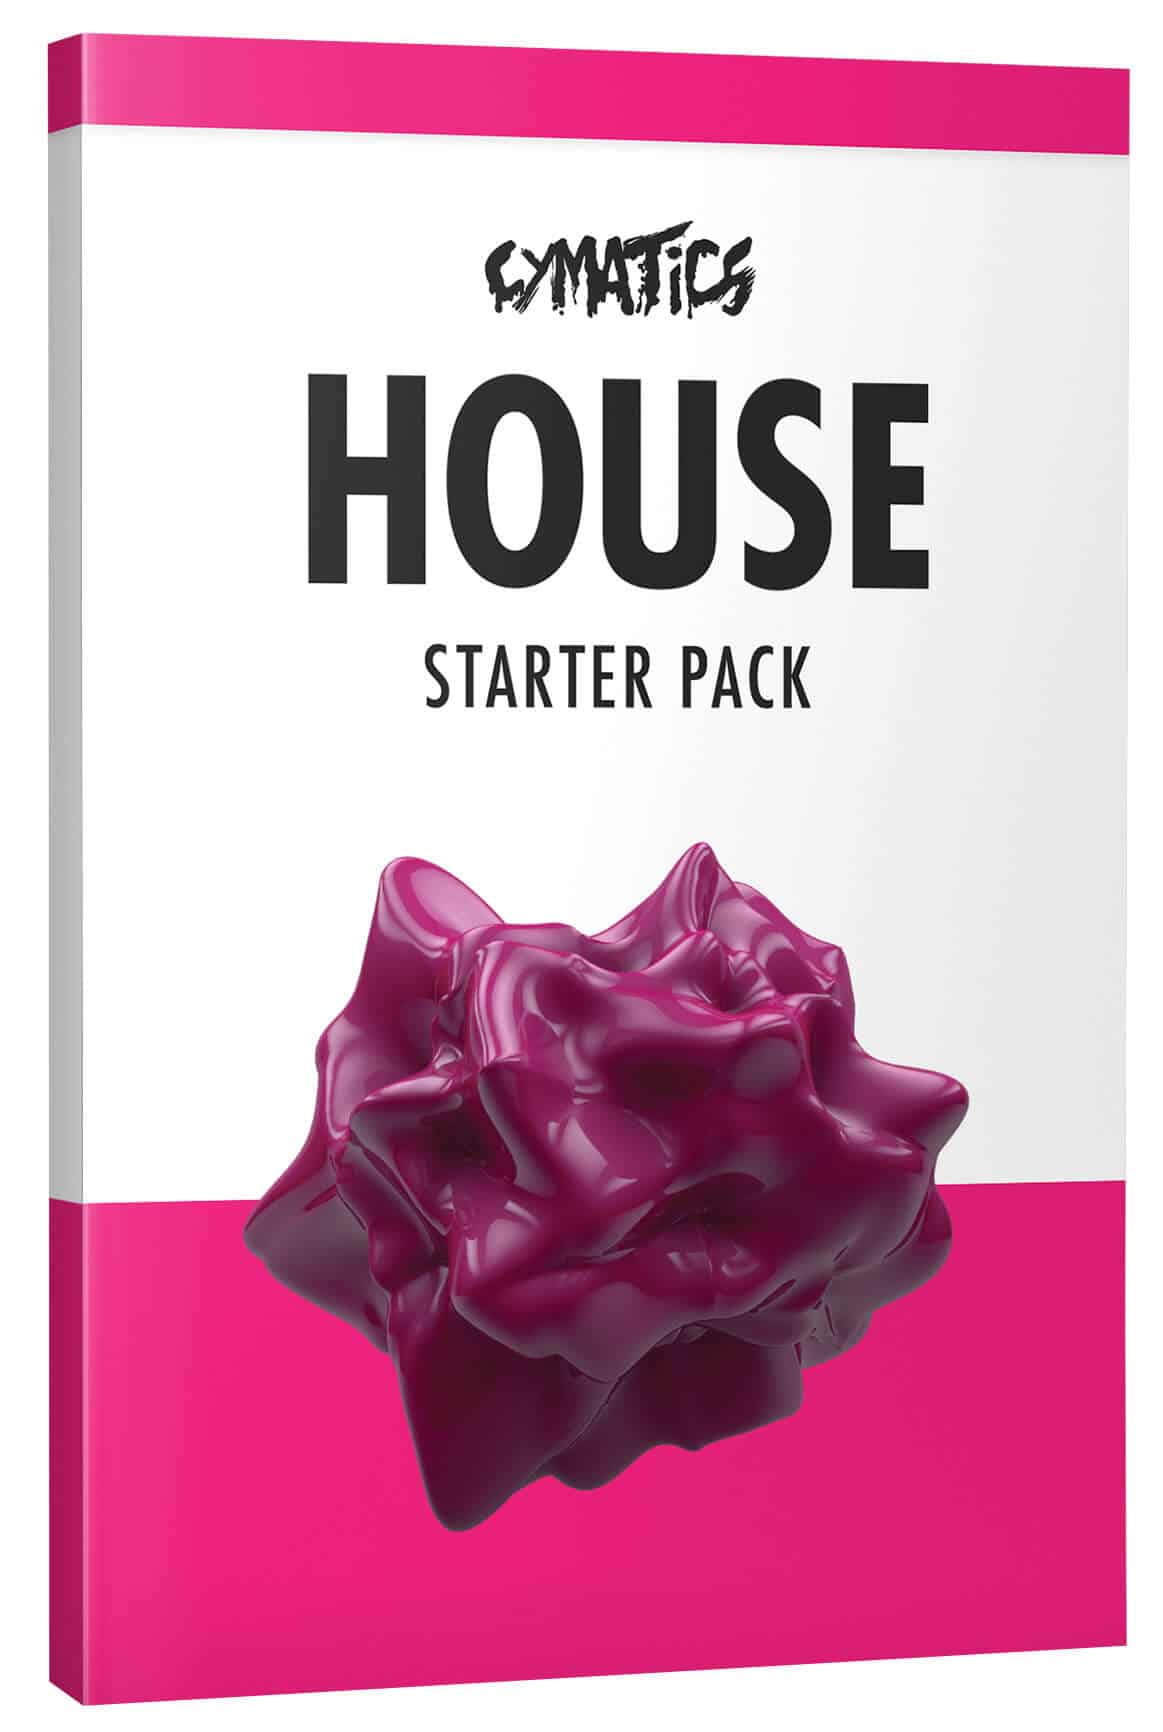 SEO keywords for your house starter pack